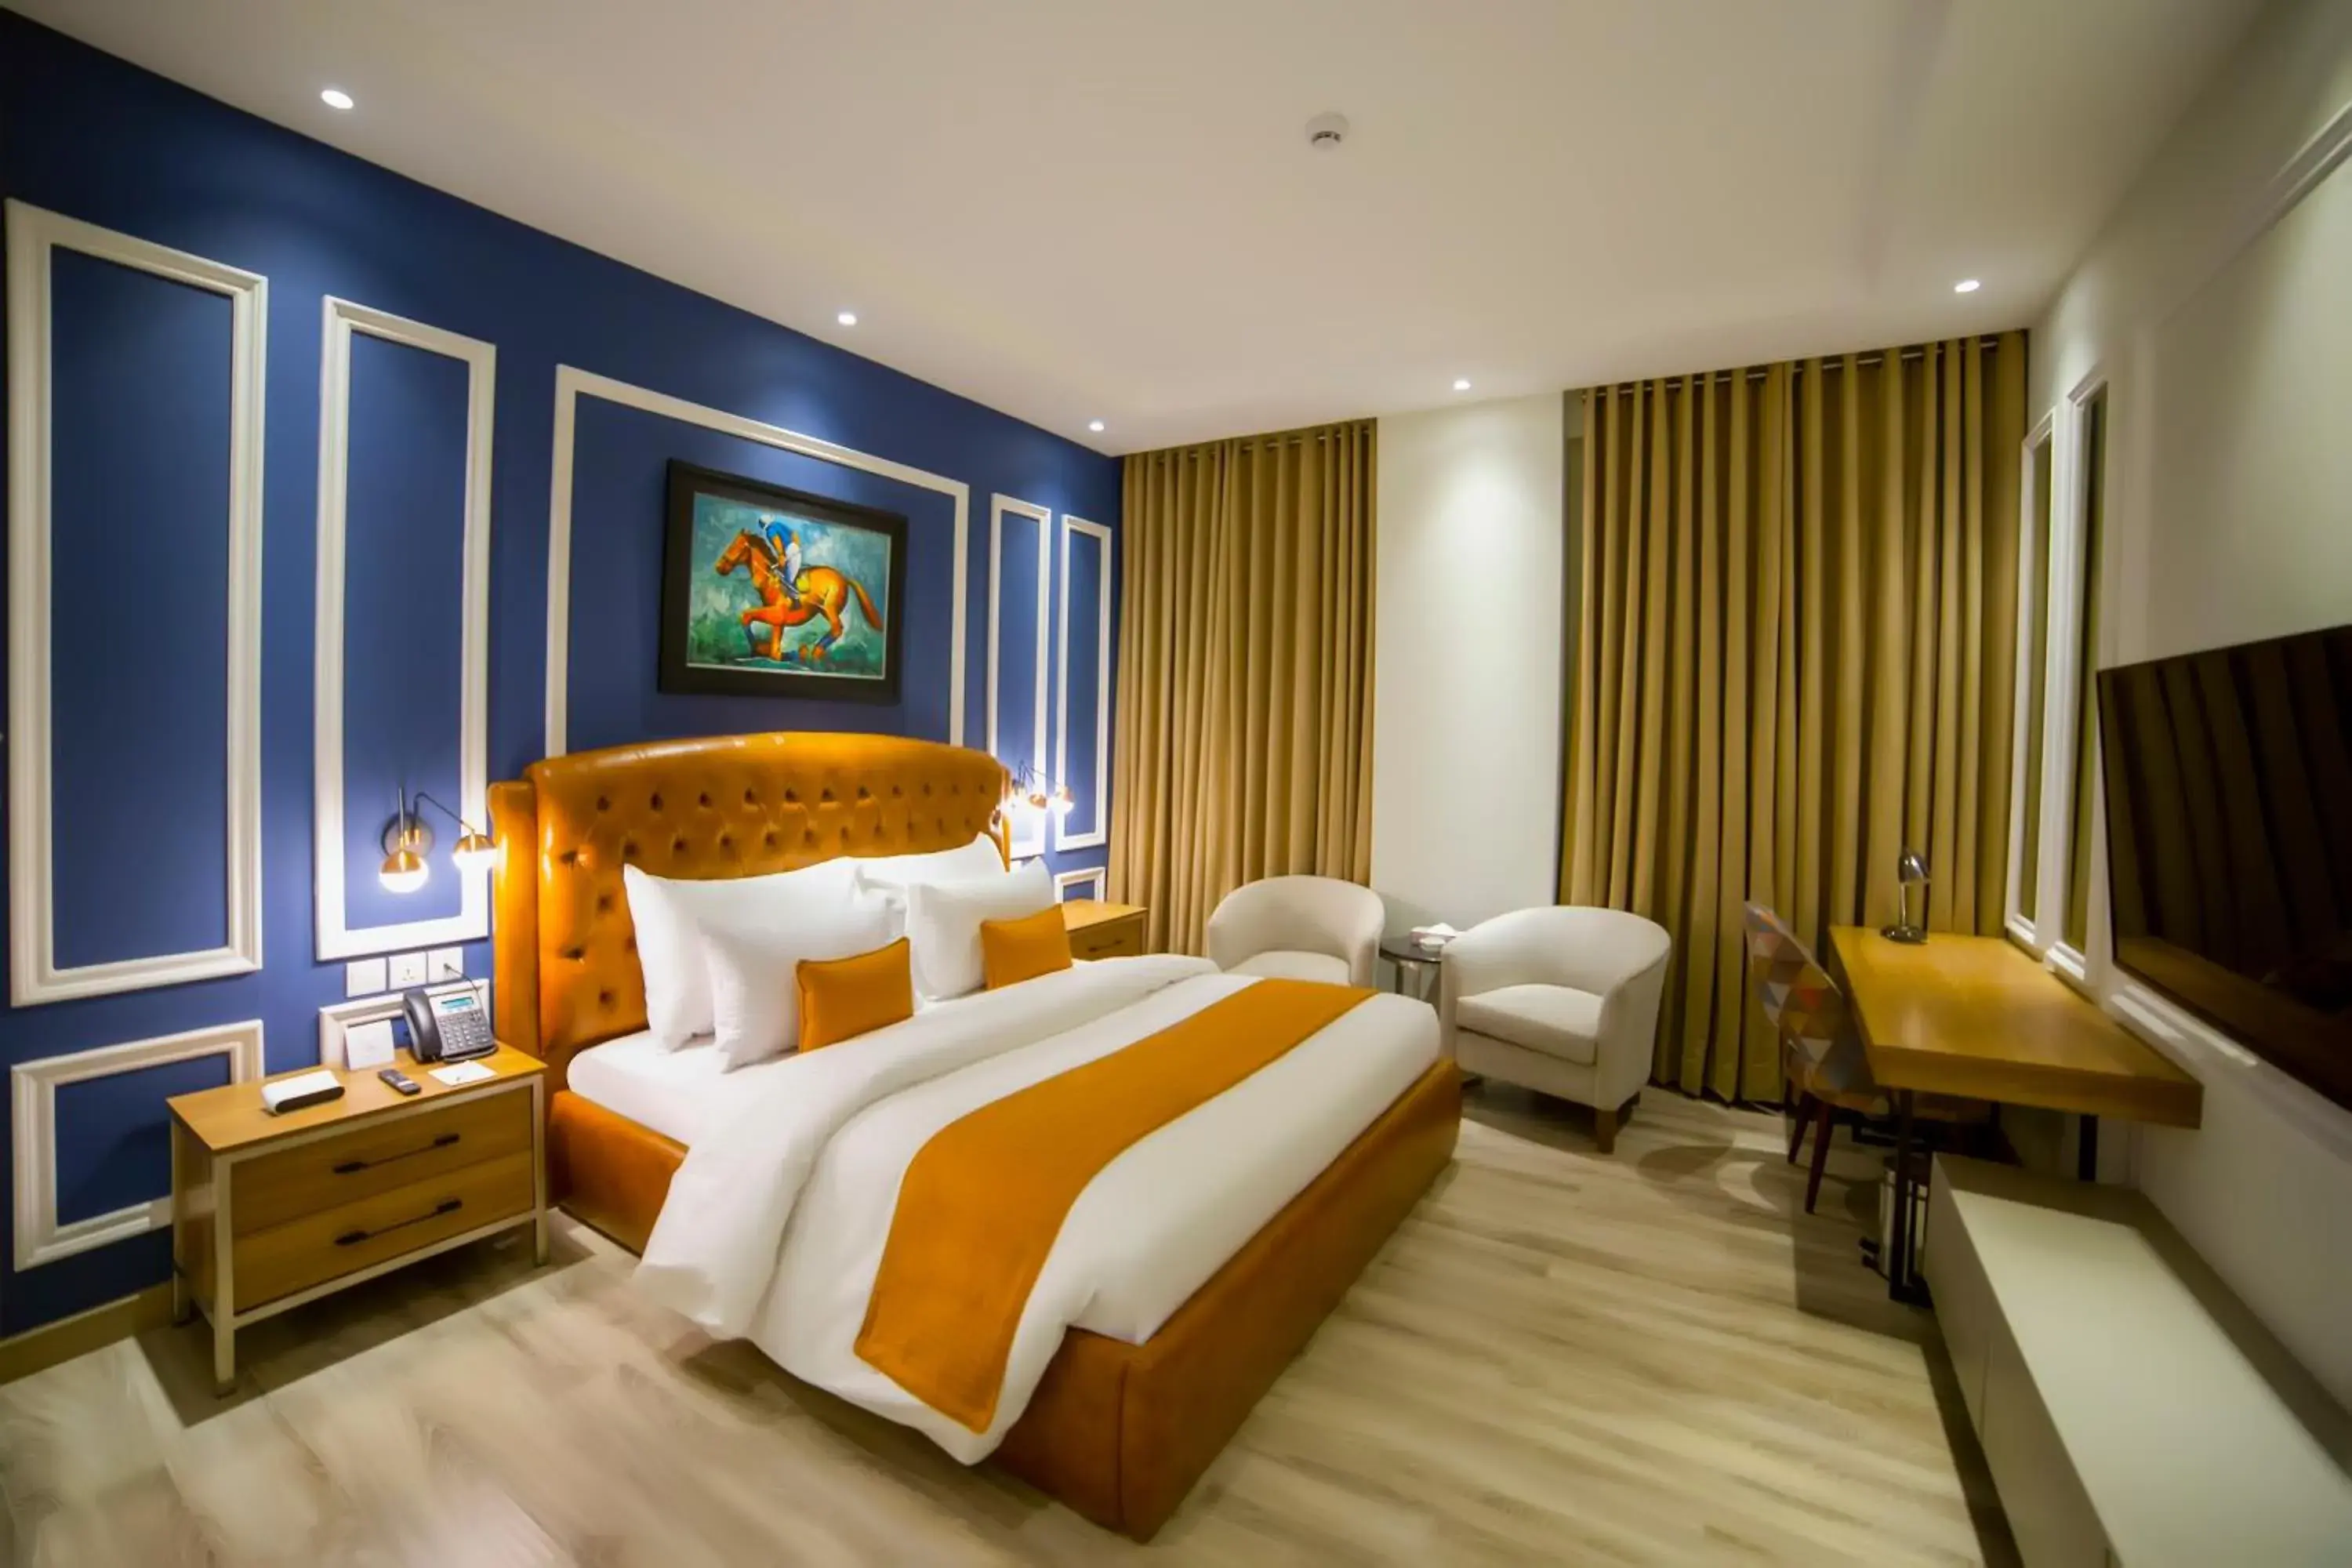 Bed in Best Western Premier Hotel Gulberg Lahore